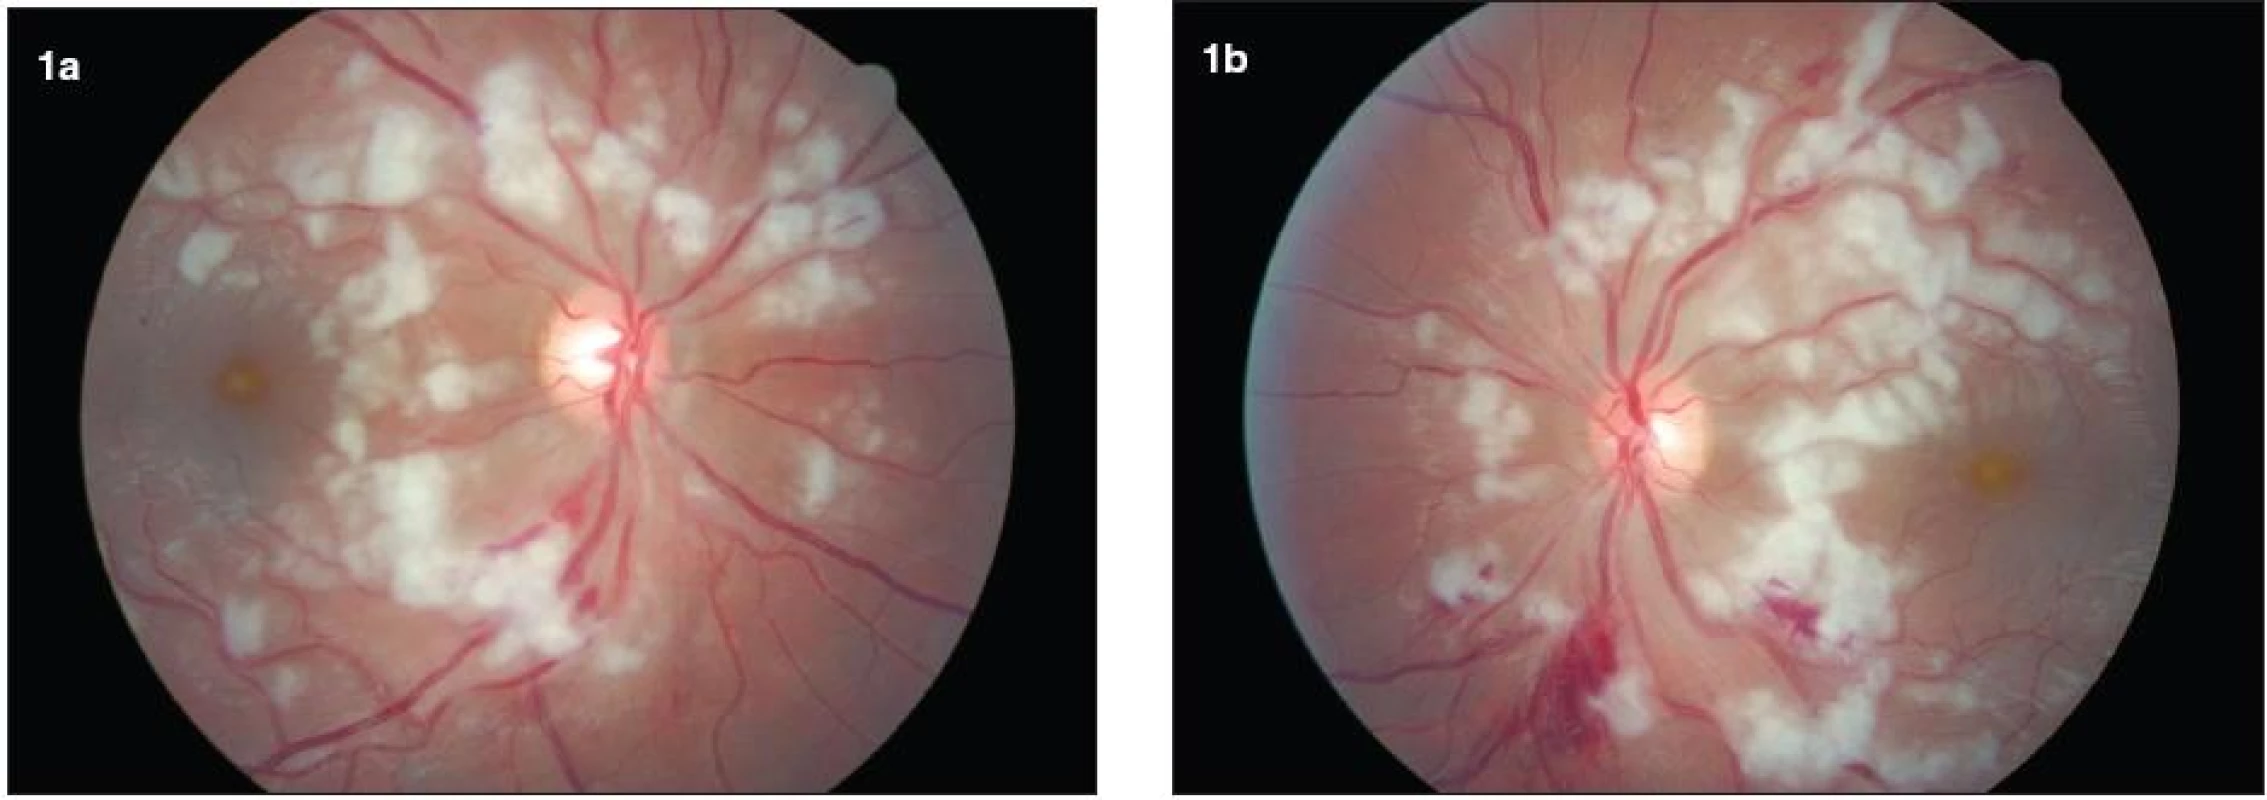 Farebná fotografia fundu obidvoch očí. a, b) Bilaterálne vidno mnohopočetné belavé vatovité ložiská miestami až splývajúce, nachádzajúce sa najmä peripapilárne. Intraretinálne krvácania sú prítomné na obidvoch očiach, výraznejšie vľavo. Terč zrakového nervu je bez opuchu